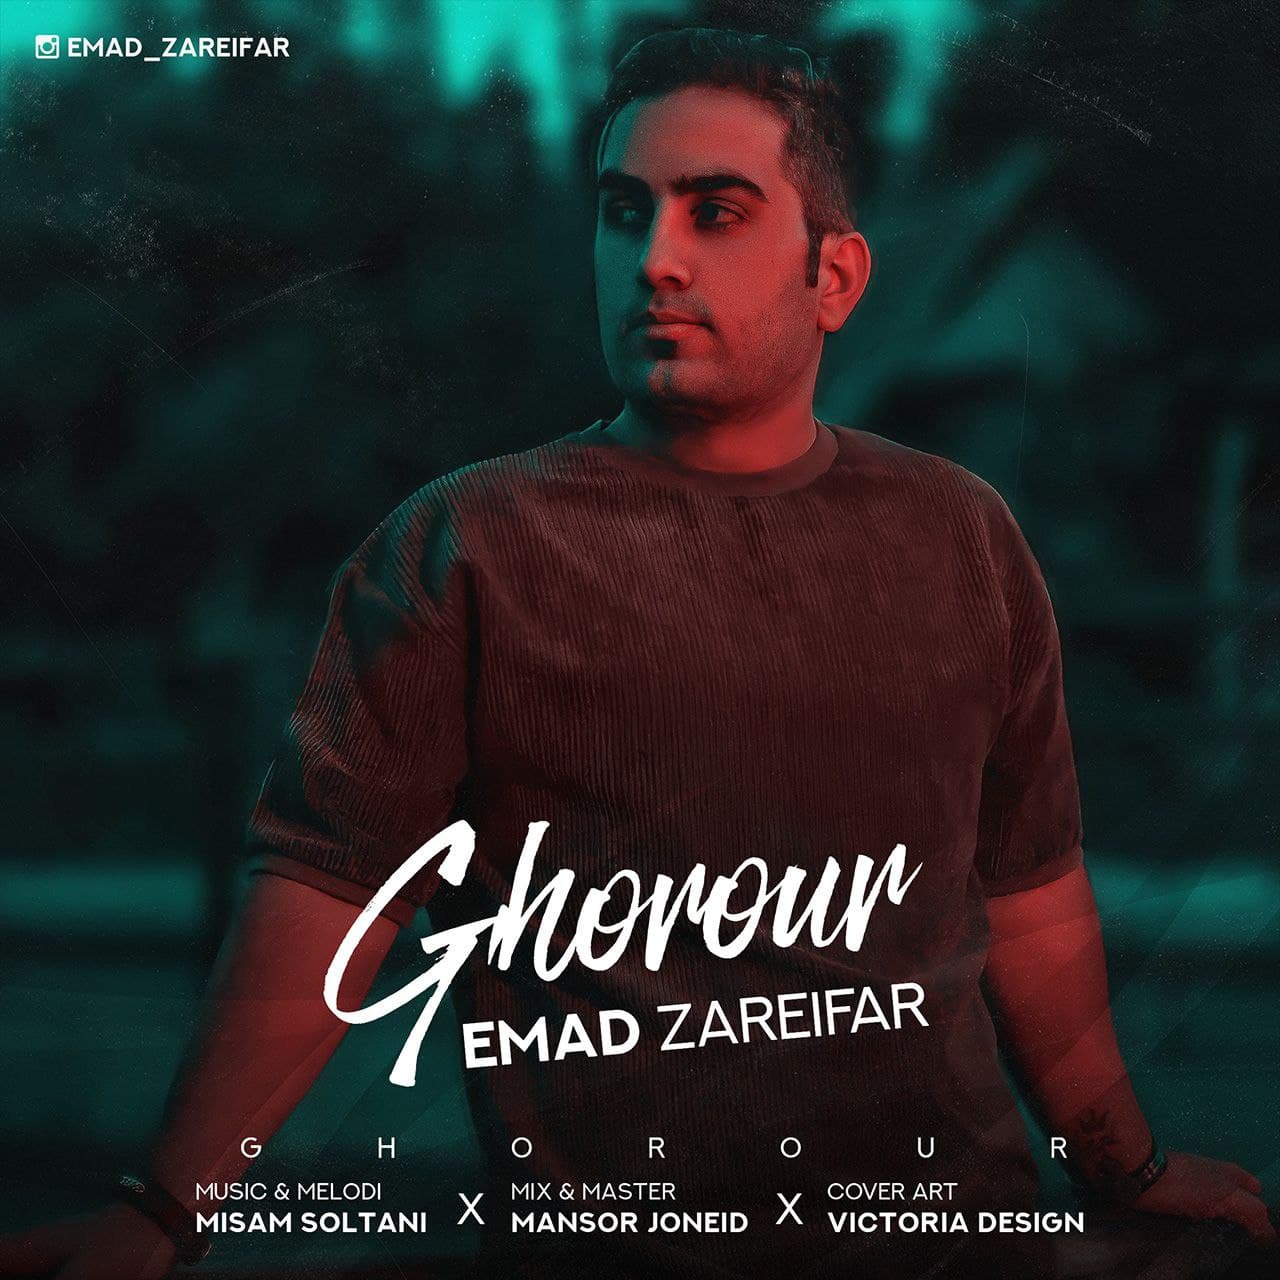 Emad Zareifar – Ghorour